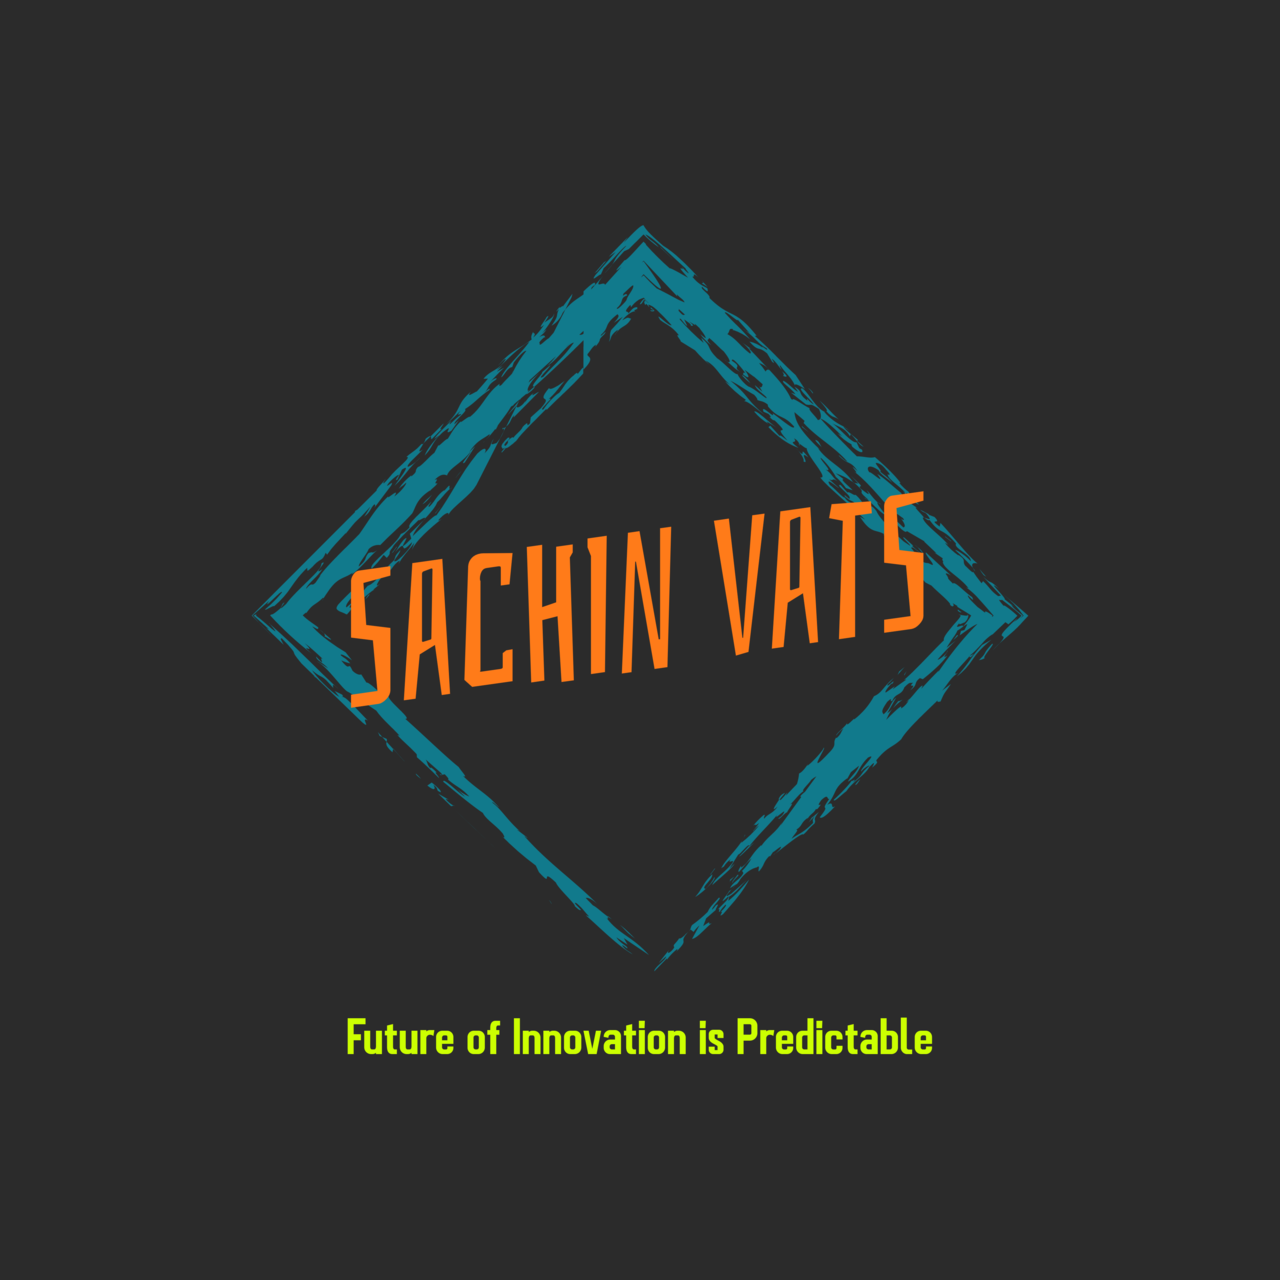 Artwork for Sachin’s Newsletter on Digital and Energy